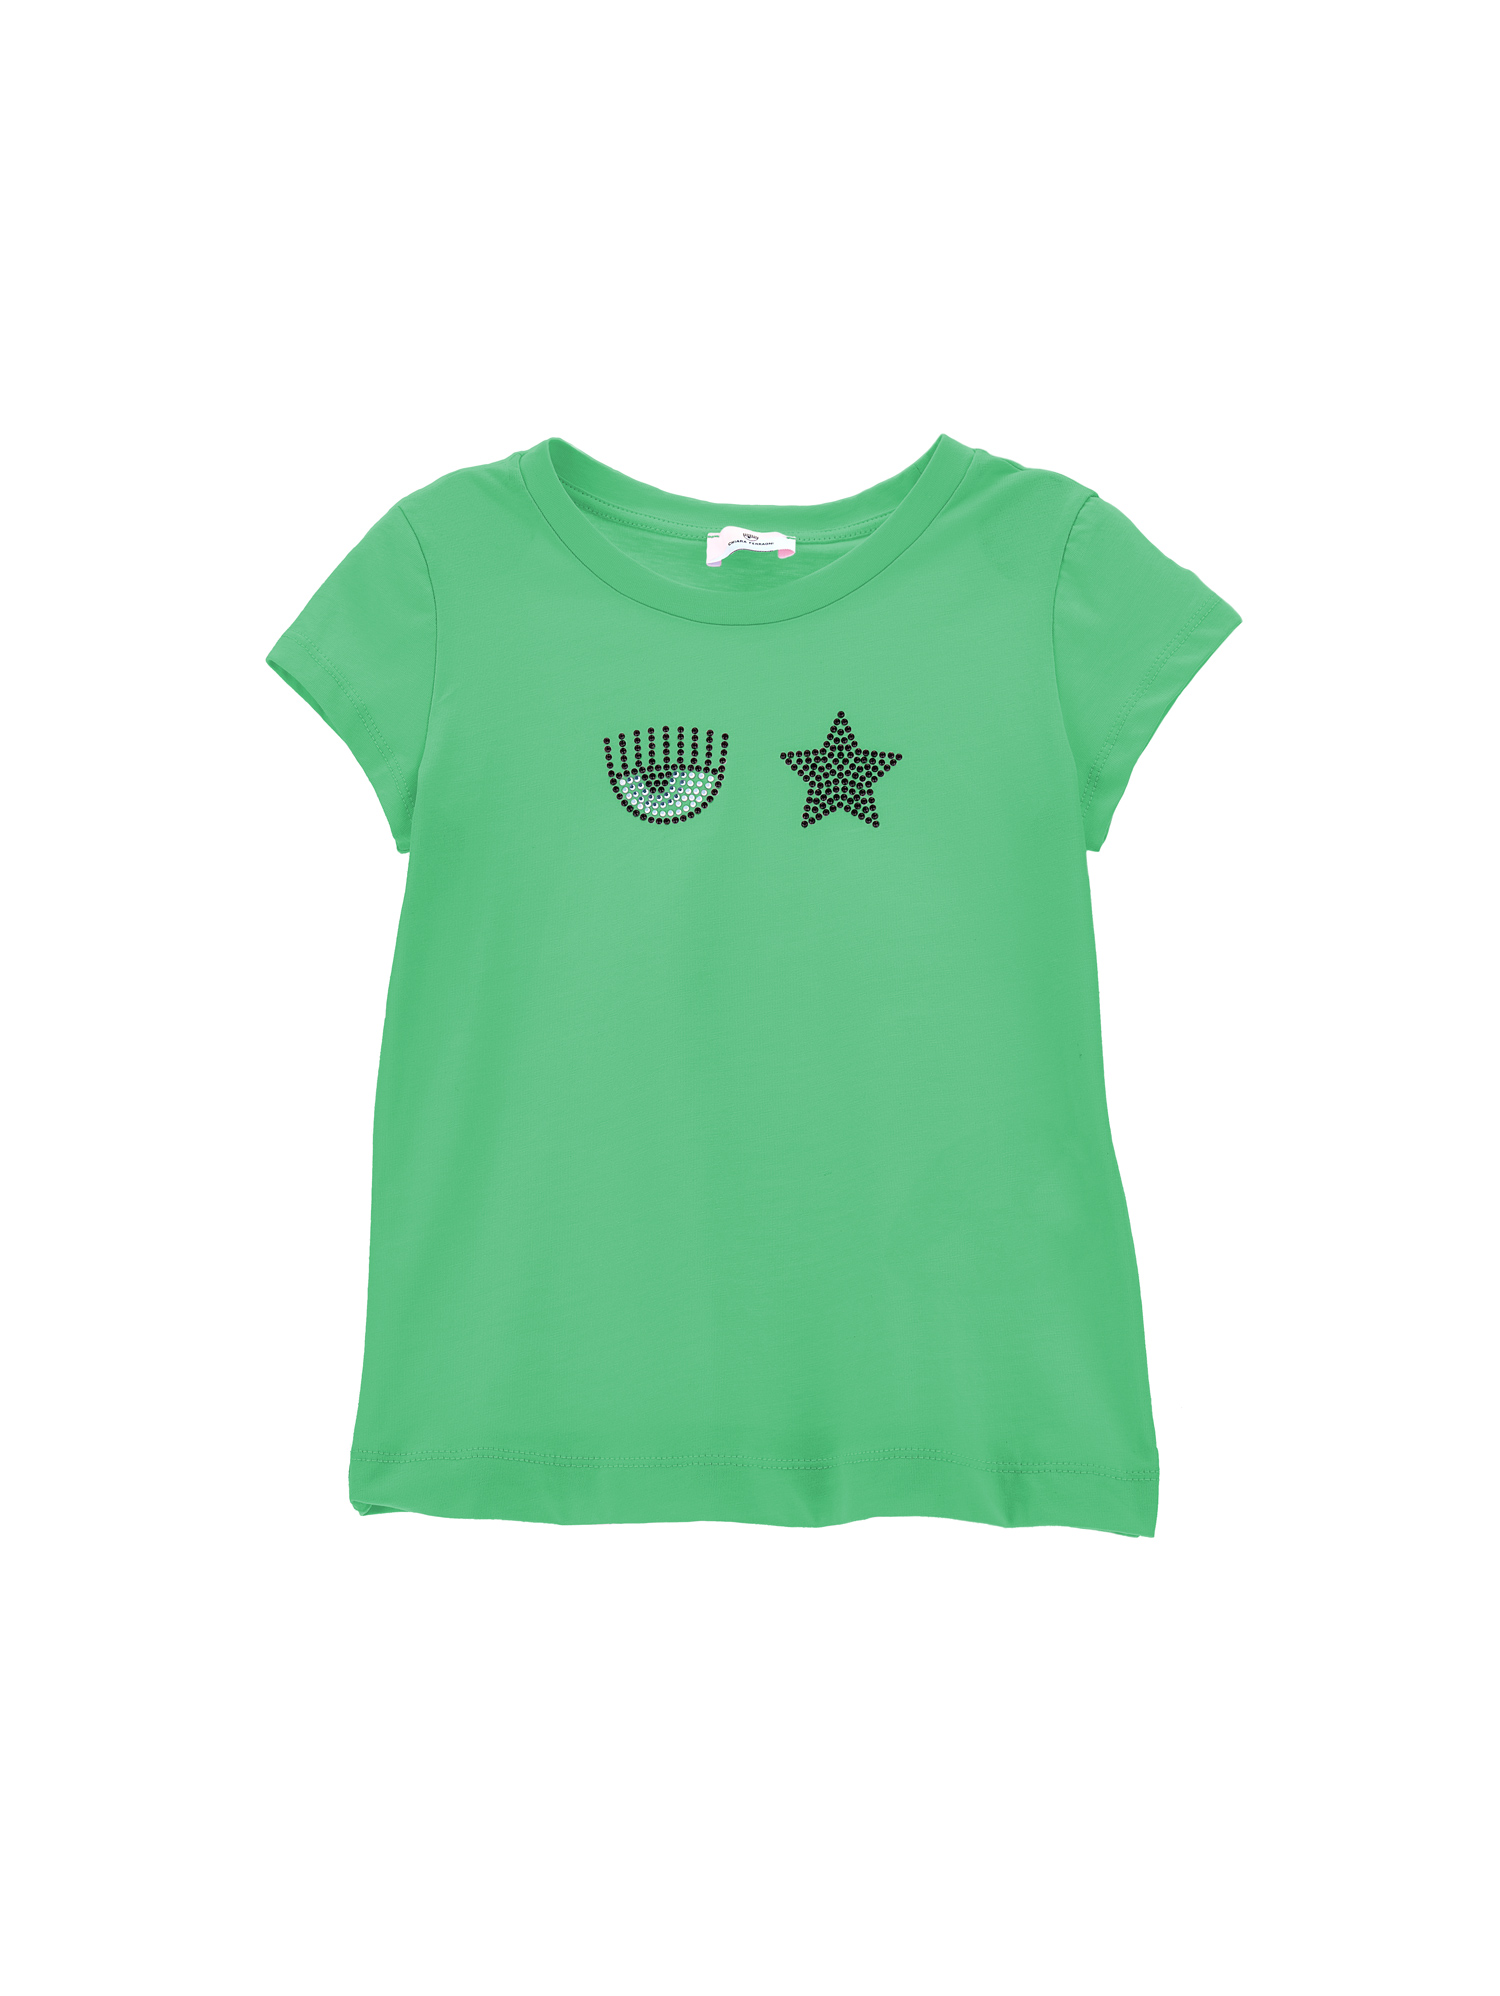 Chiara Ferragni Eyestar Embroidery T-shirt In Bright Green